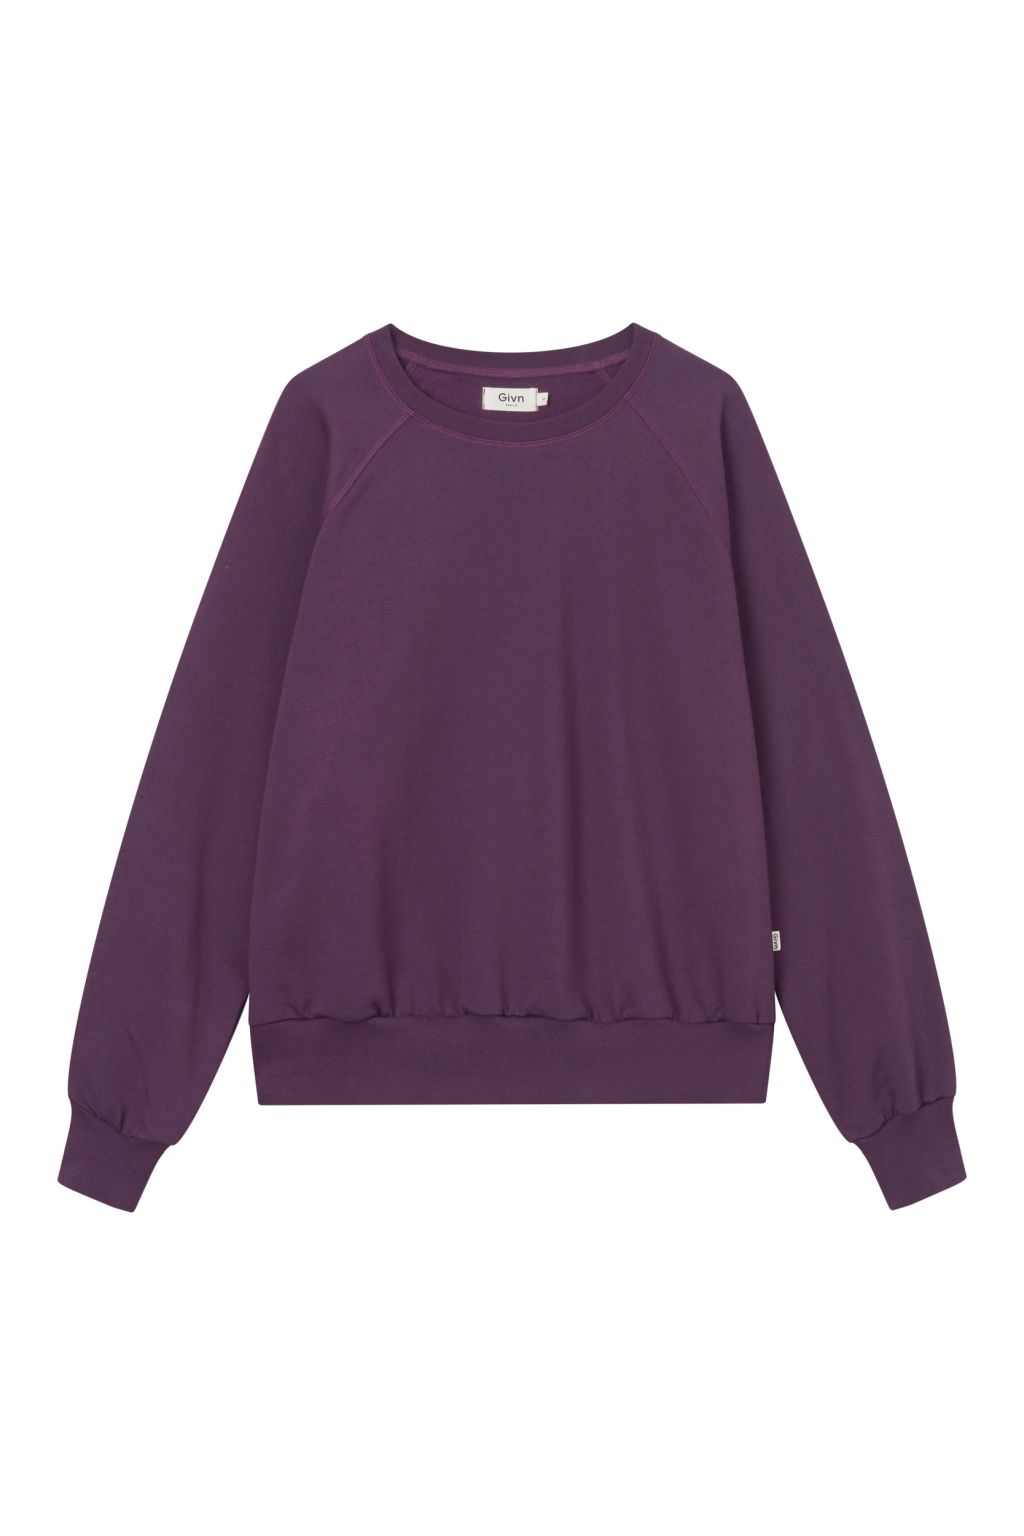 Dede - Sweater - Bio-Baumwolle Dark Purple L